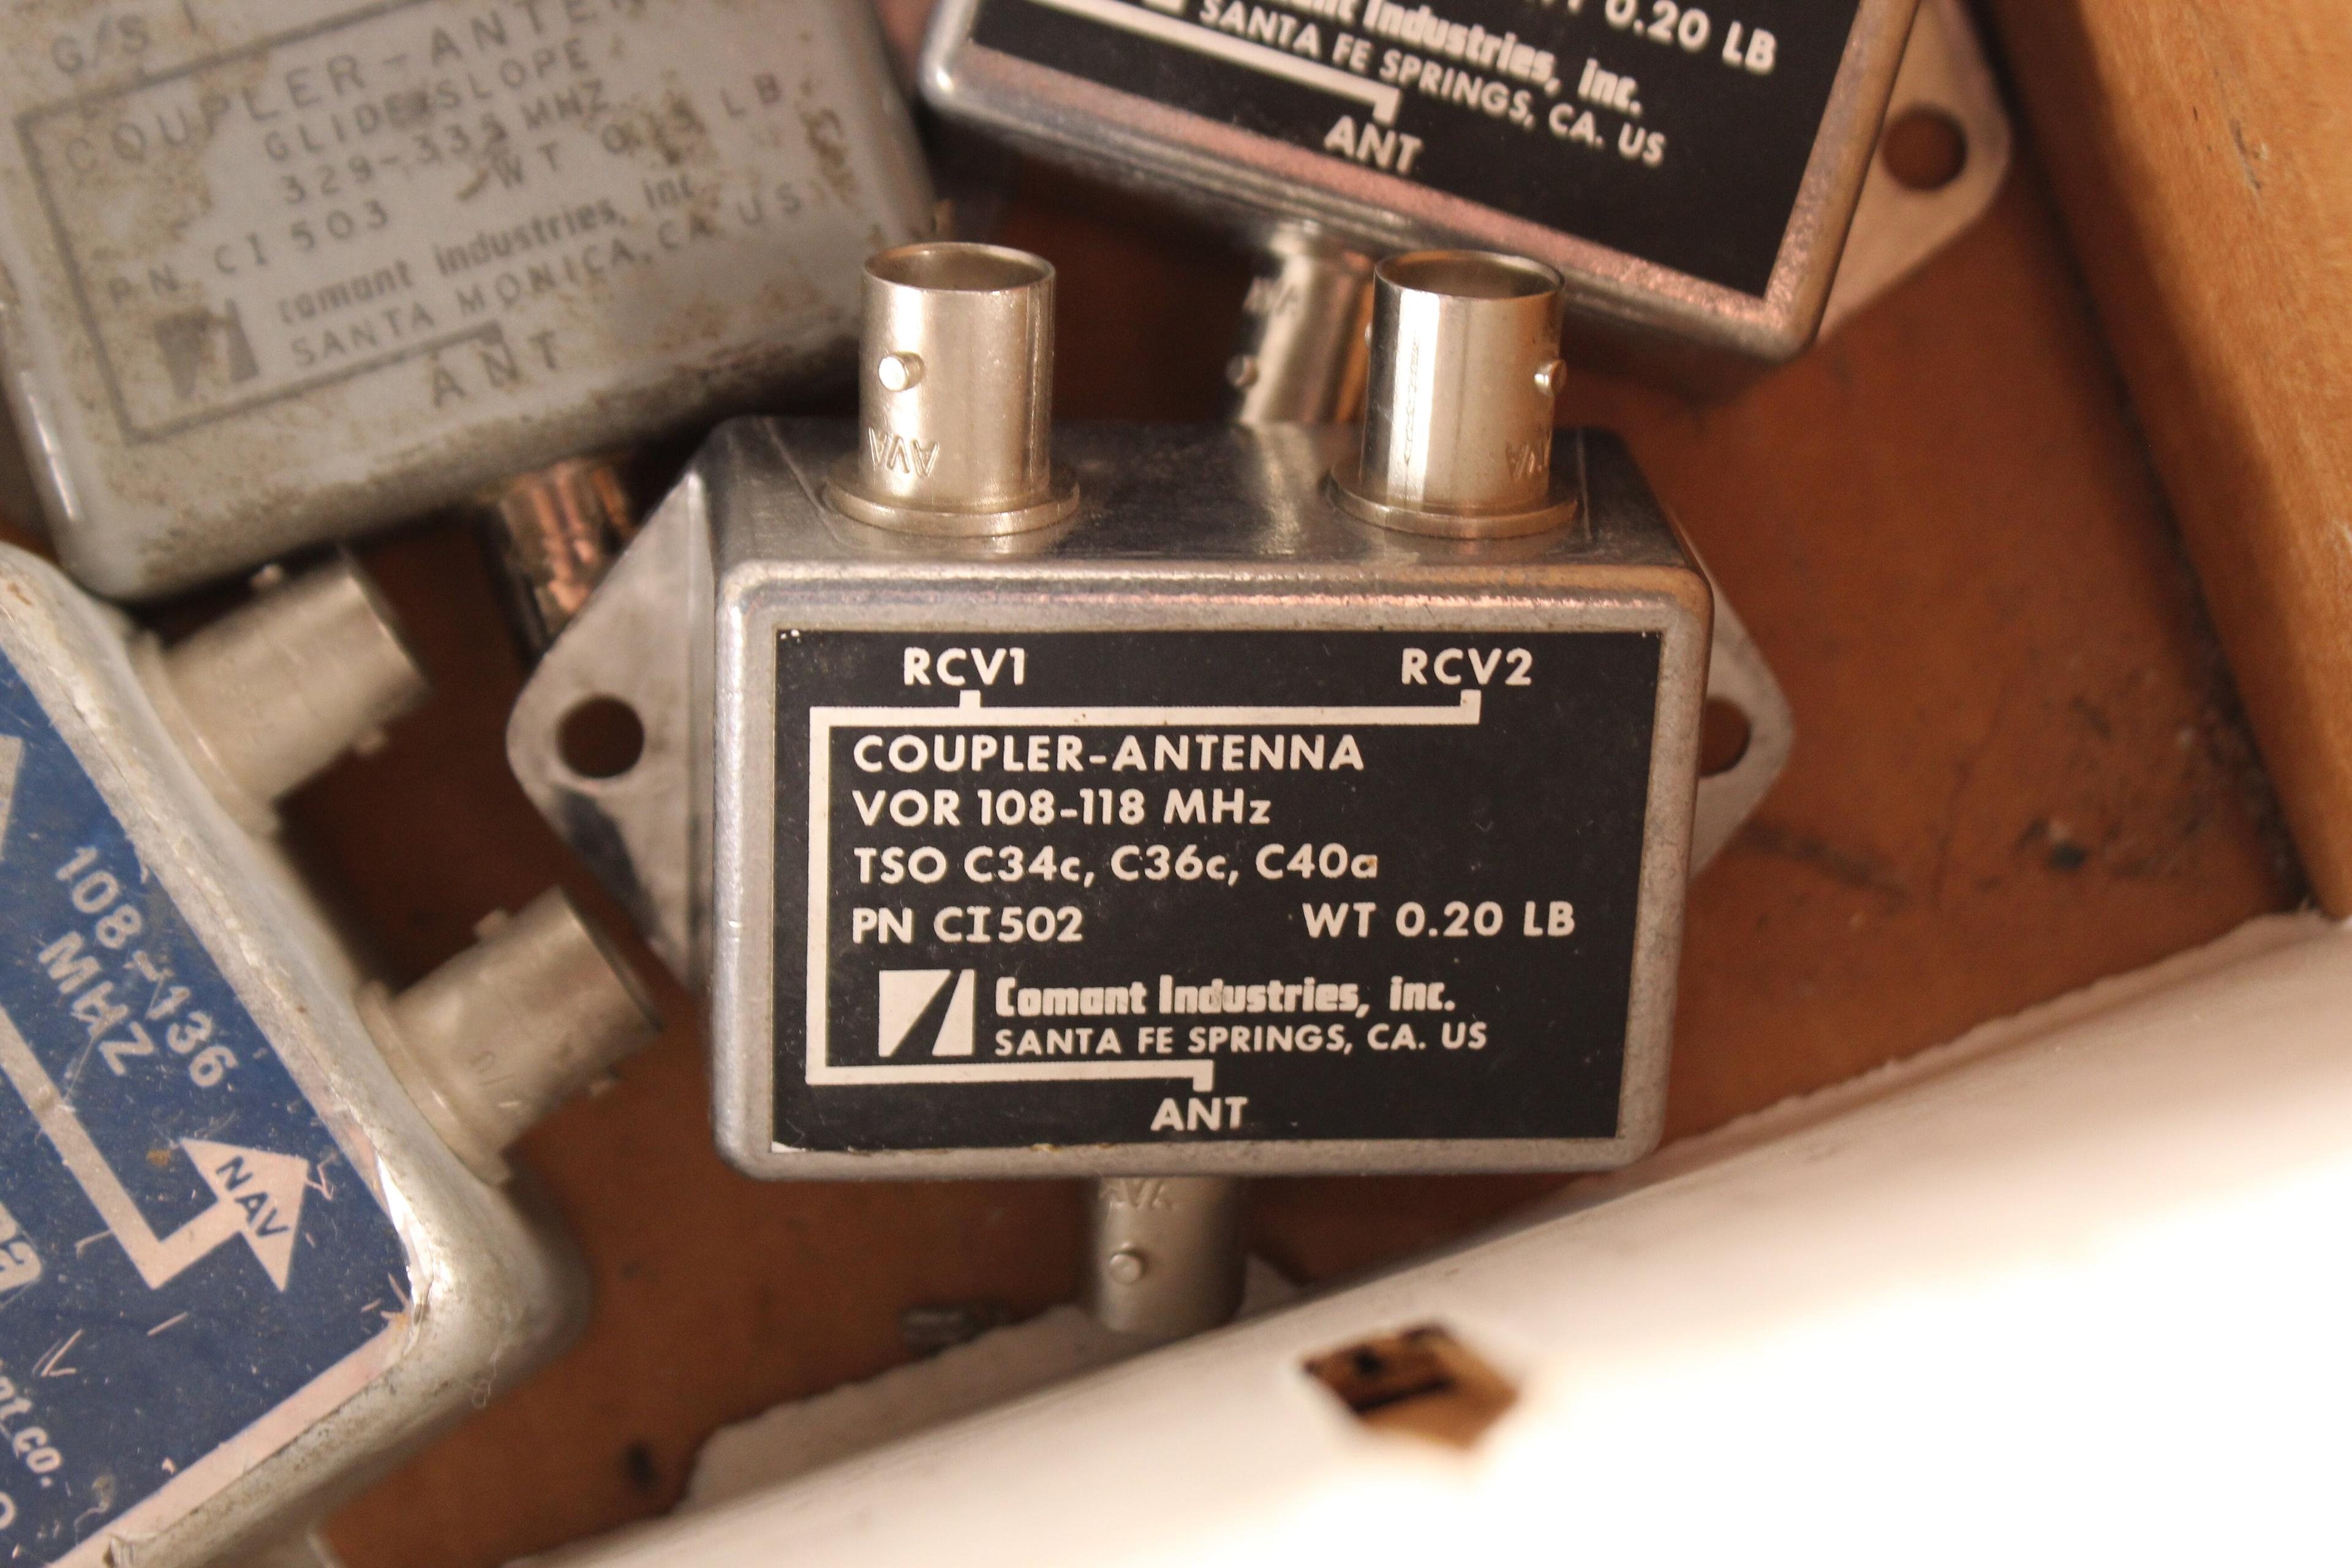 Lot of 3 Comant Coupler-Antenna PN CI502/Lot of 3 Dorne & Margolin NAV Diplexer